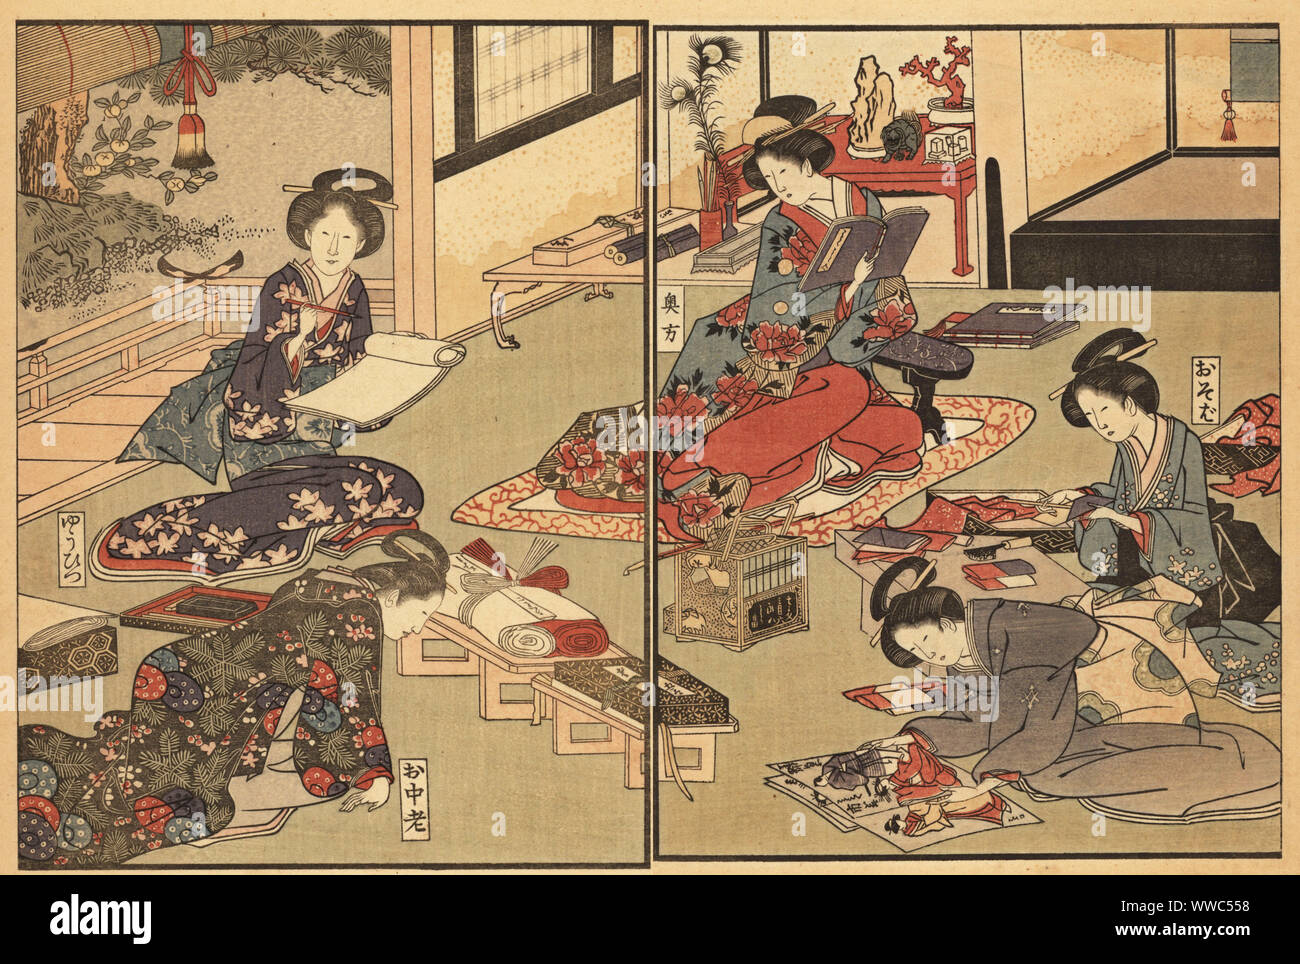 Frau von der Elite Samurai Klasse Bücher lesen, mit anderen Frauen Schreiben mit einem Stift, ein Blick auf Ukiyo-e druckt, und man Falten Papier. Eine andere Frau liefert Unmengen von Papier und Tinte. Die Nische ist mit Korallen, Schriftrollen, Federn, etc. Handkoloriert ukiyo-e Holzschnitt von Toyokuni Utagawa aus Shikitei Sanba des Ehon Imayo Sugata (Bilderbuch der modernen Formen und Figuren, Tokio, 1916 eingerichtet. Reprint des Originals von 1802. Stockfoto